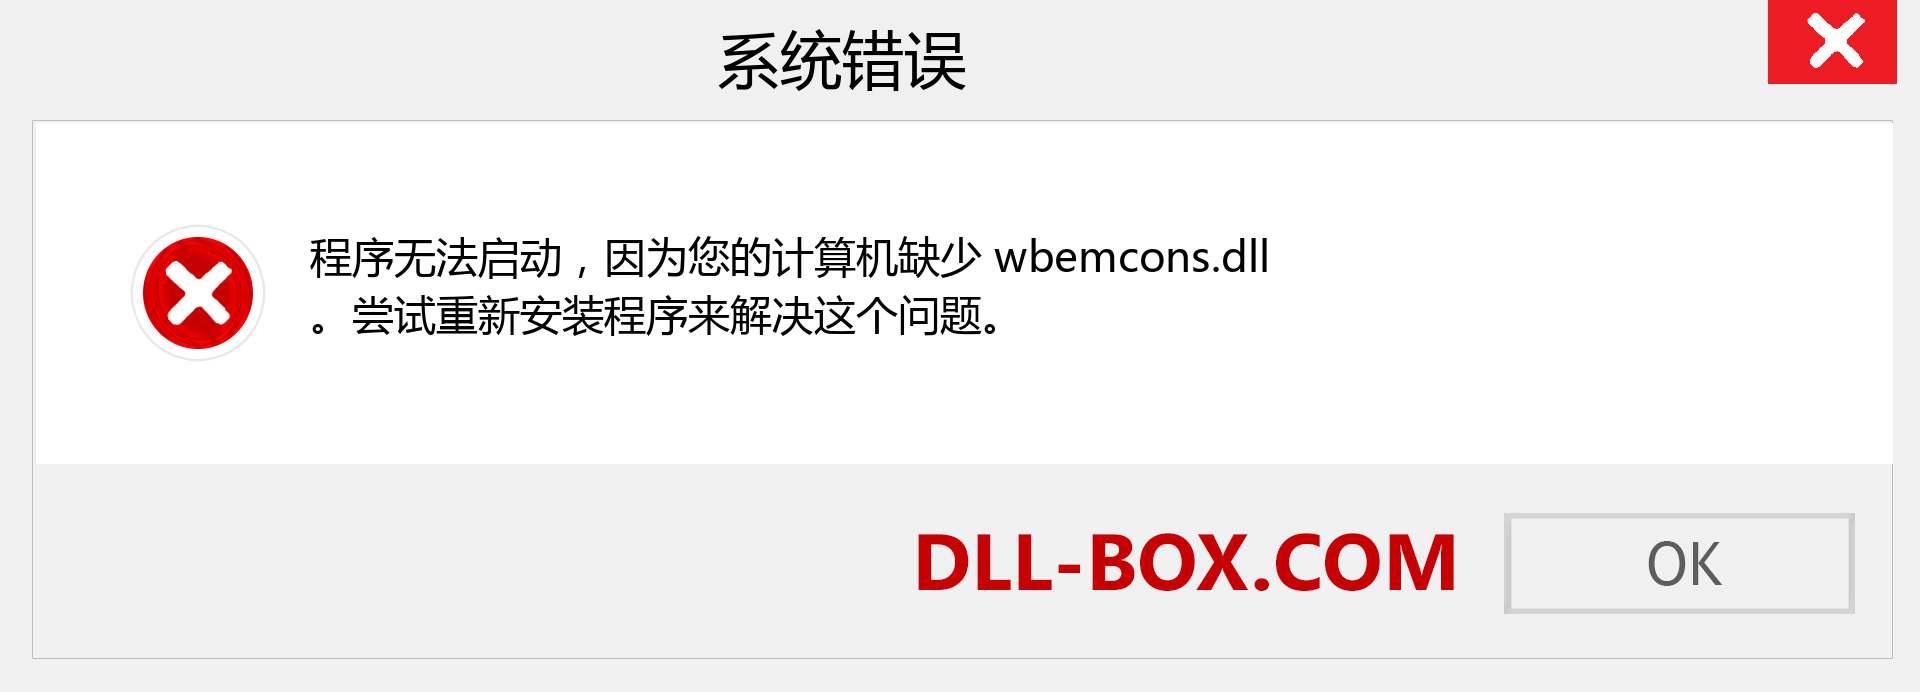 wbemcons.dll 文件丢失？。 适用于 Windows 7、8、10 的下载 - 修复 Windows、照片、图像上的 wbemcons dll 丢失错误